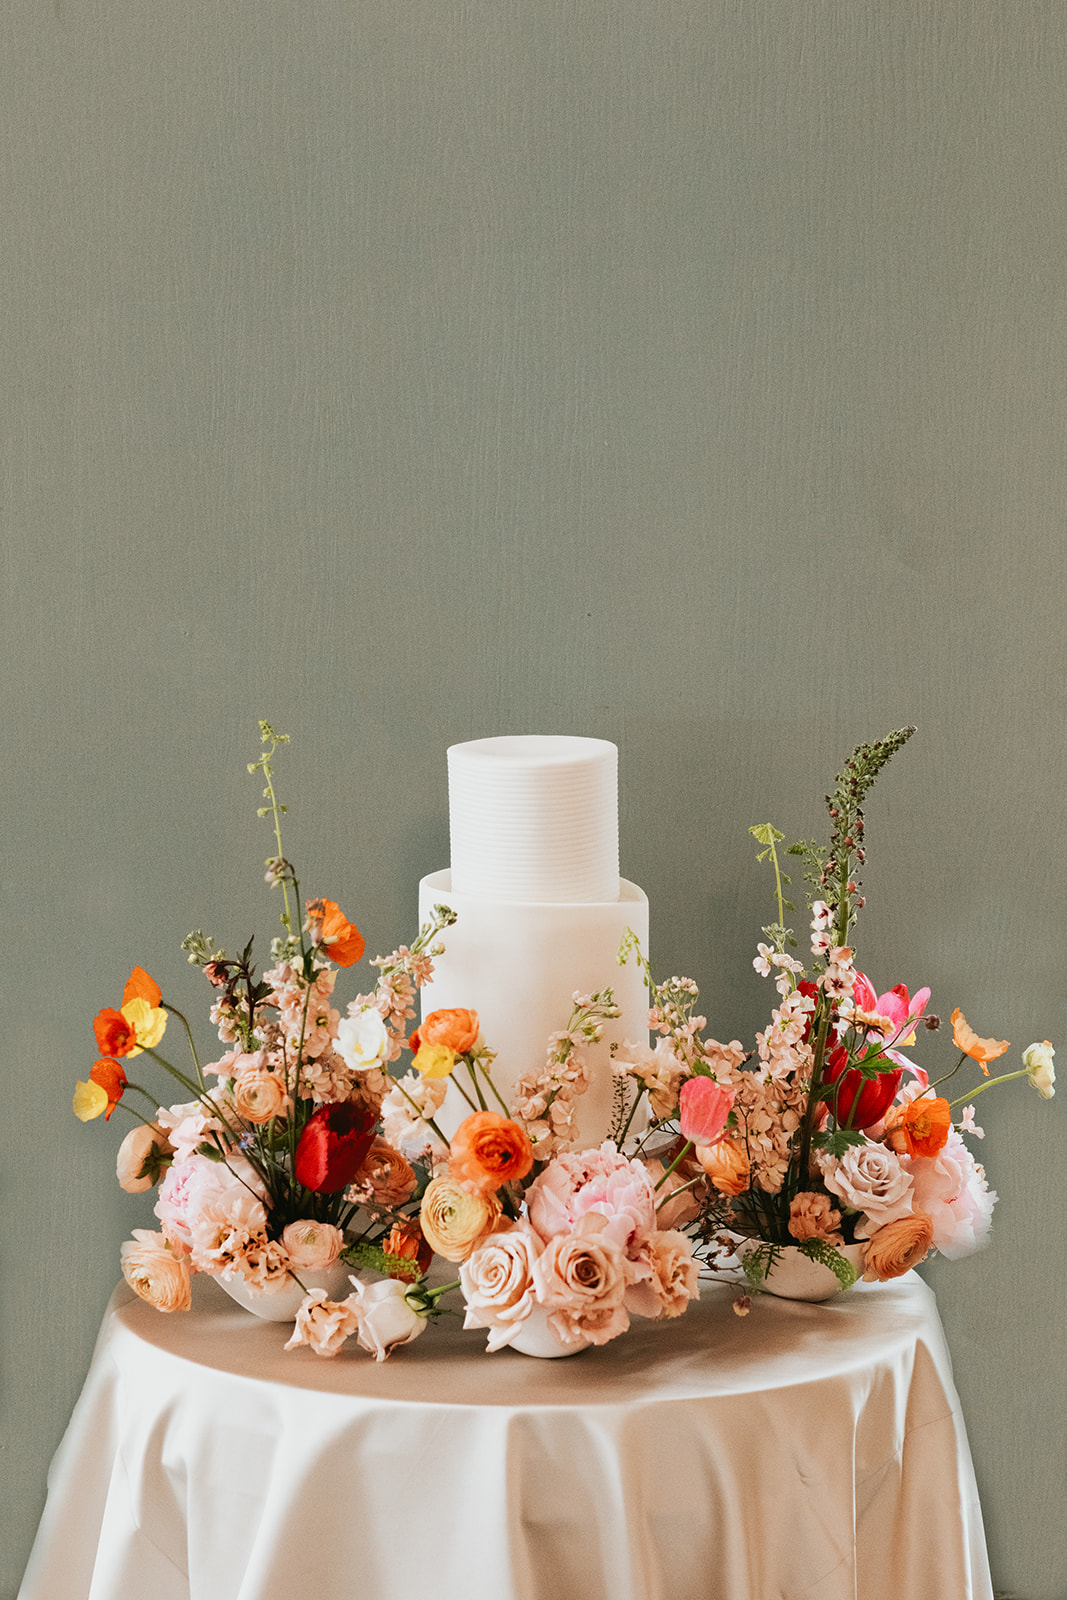 White wedding cake set up amongst spring flowers